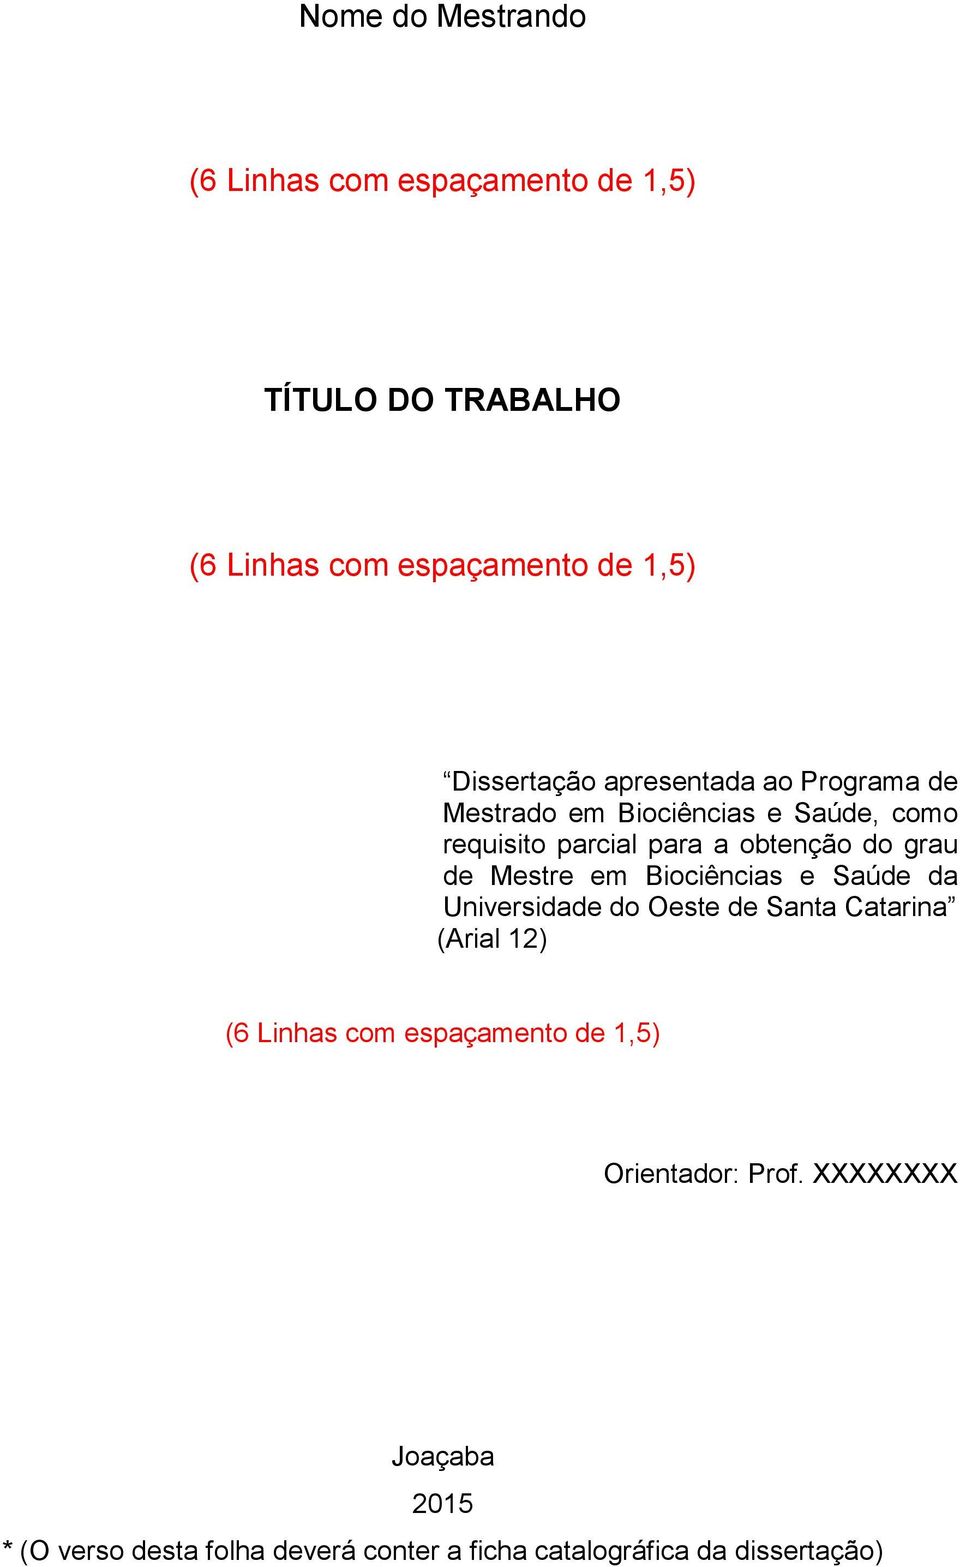 grau de Mestre em Biociências e Saúde da Universidade do Oeste de Santa Catarina (Arial 12) (6 Linhas com